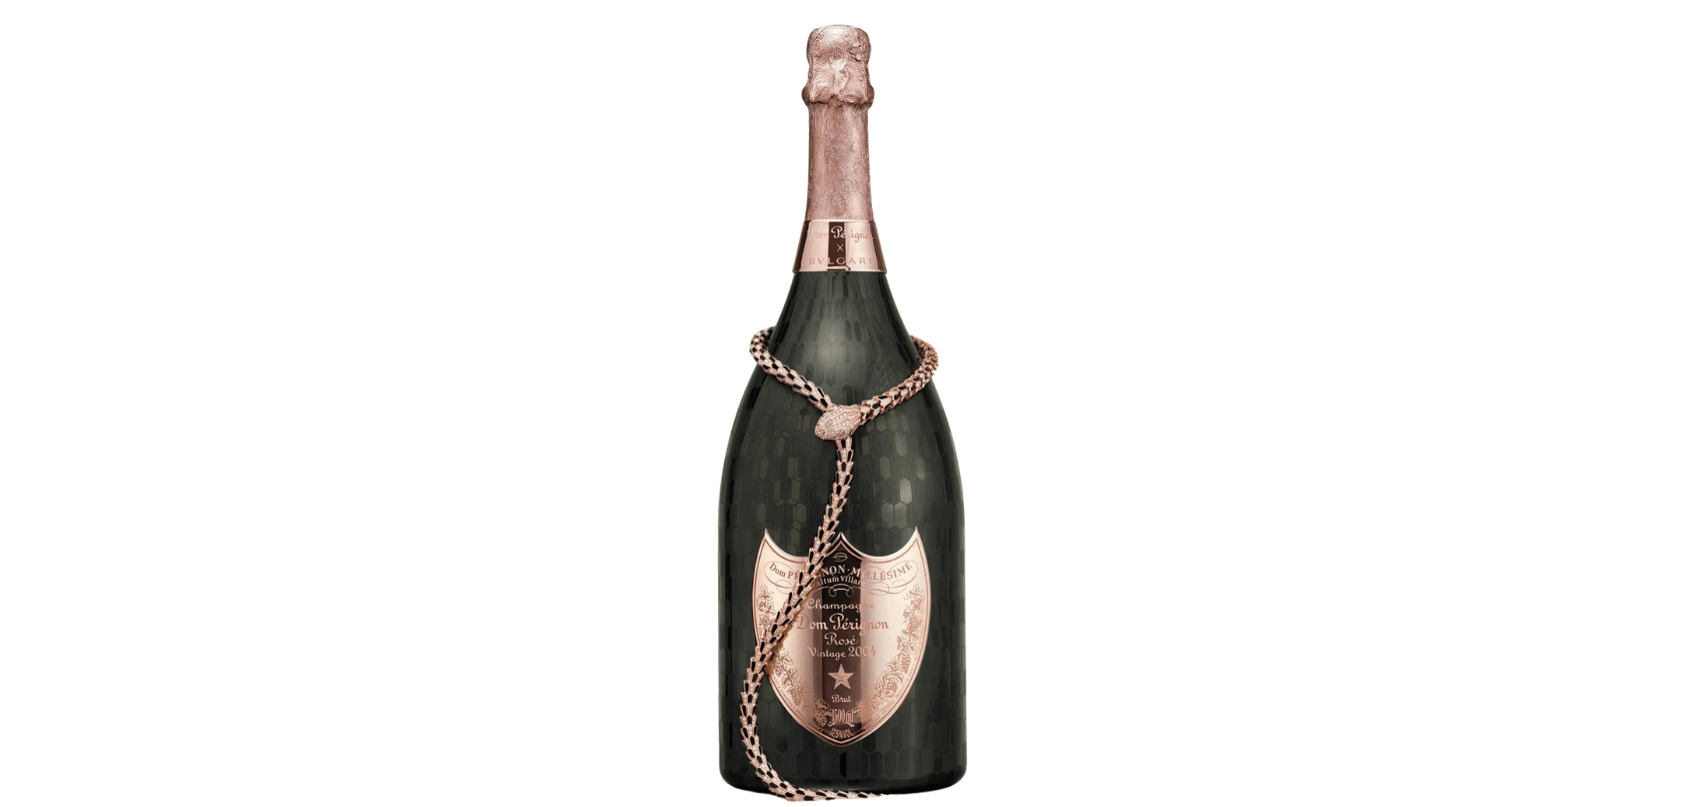 Bvlgari and Dom Pérignon Limited-Edition Champagne